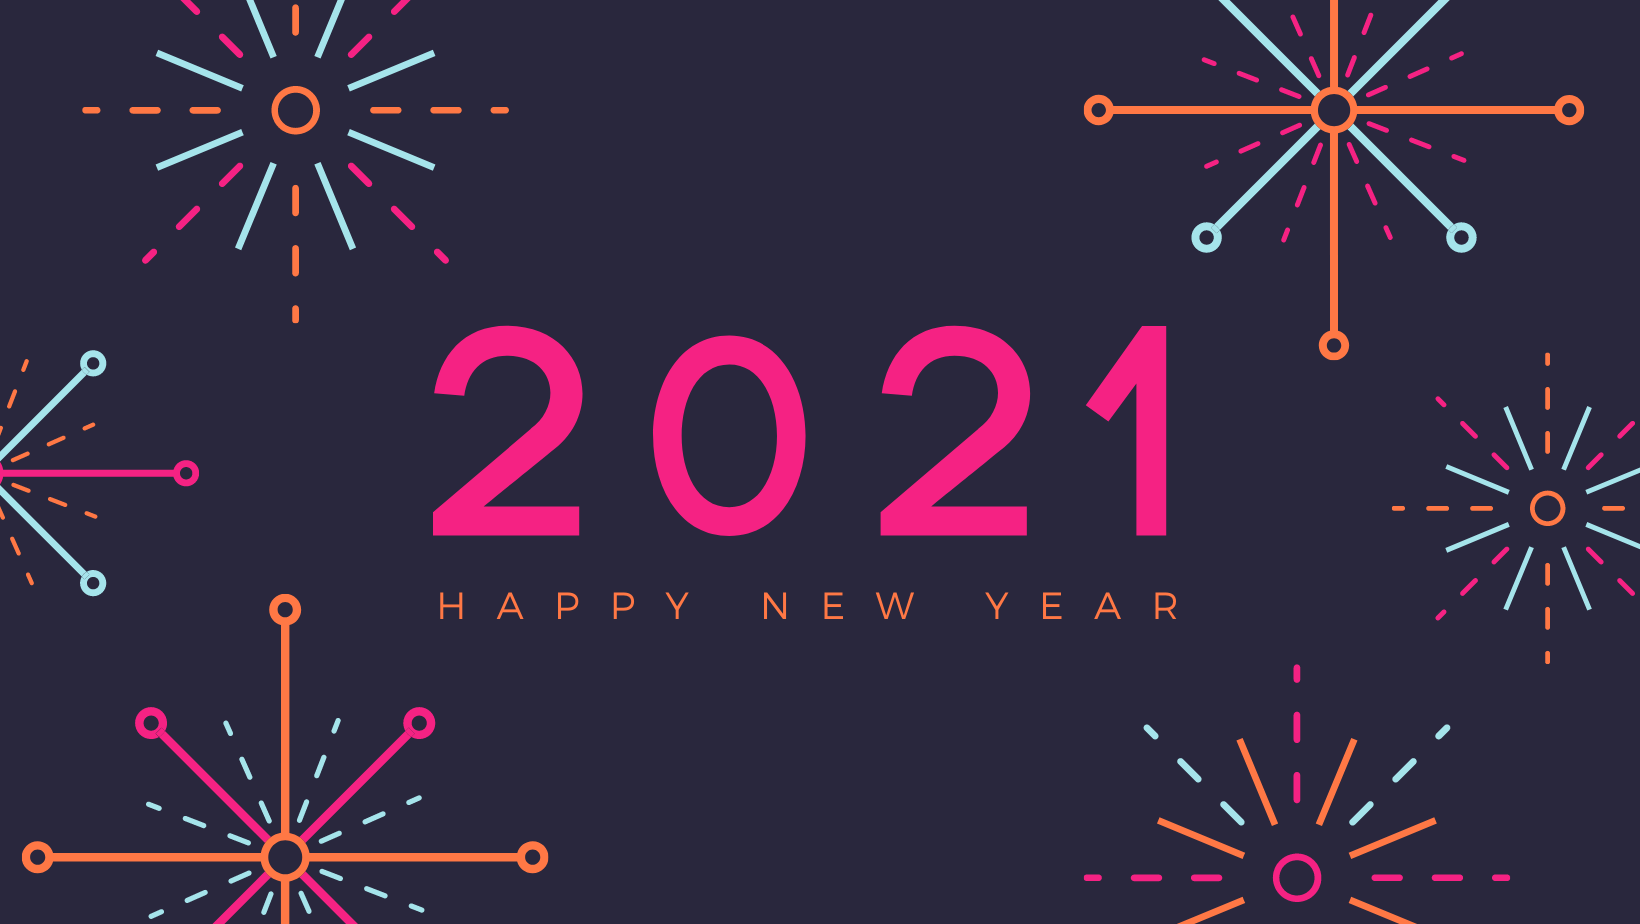 Nhìn lại năm 2020 đầy biến động - Ngóng chờ năm mới 2021 tươi sáng hơn - happy new year 2021